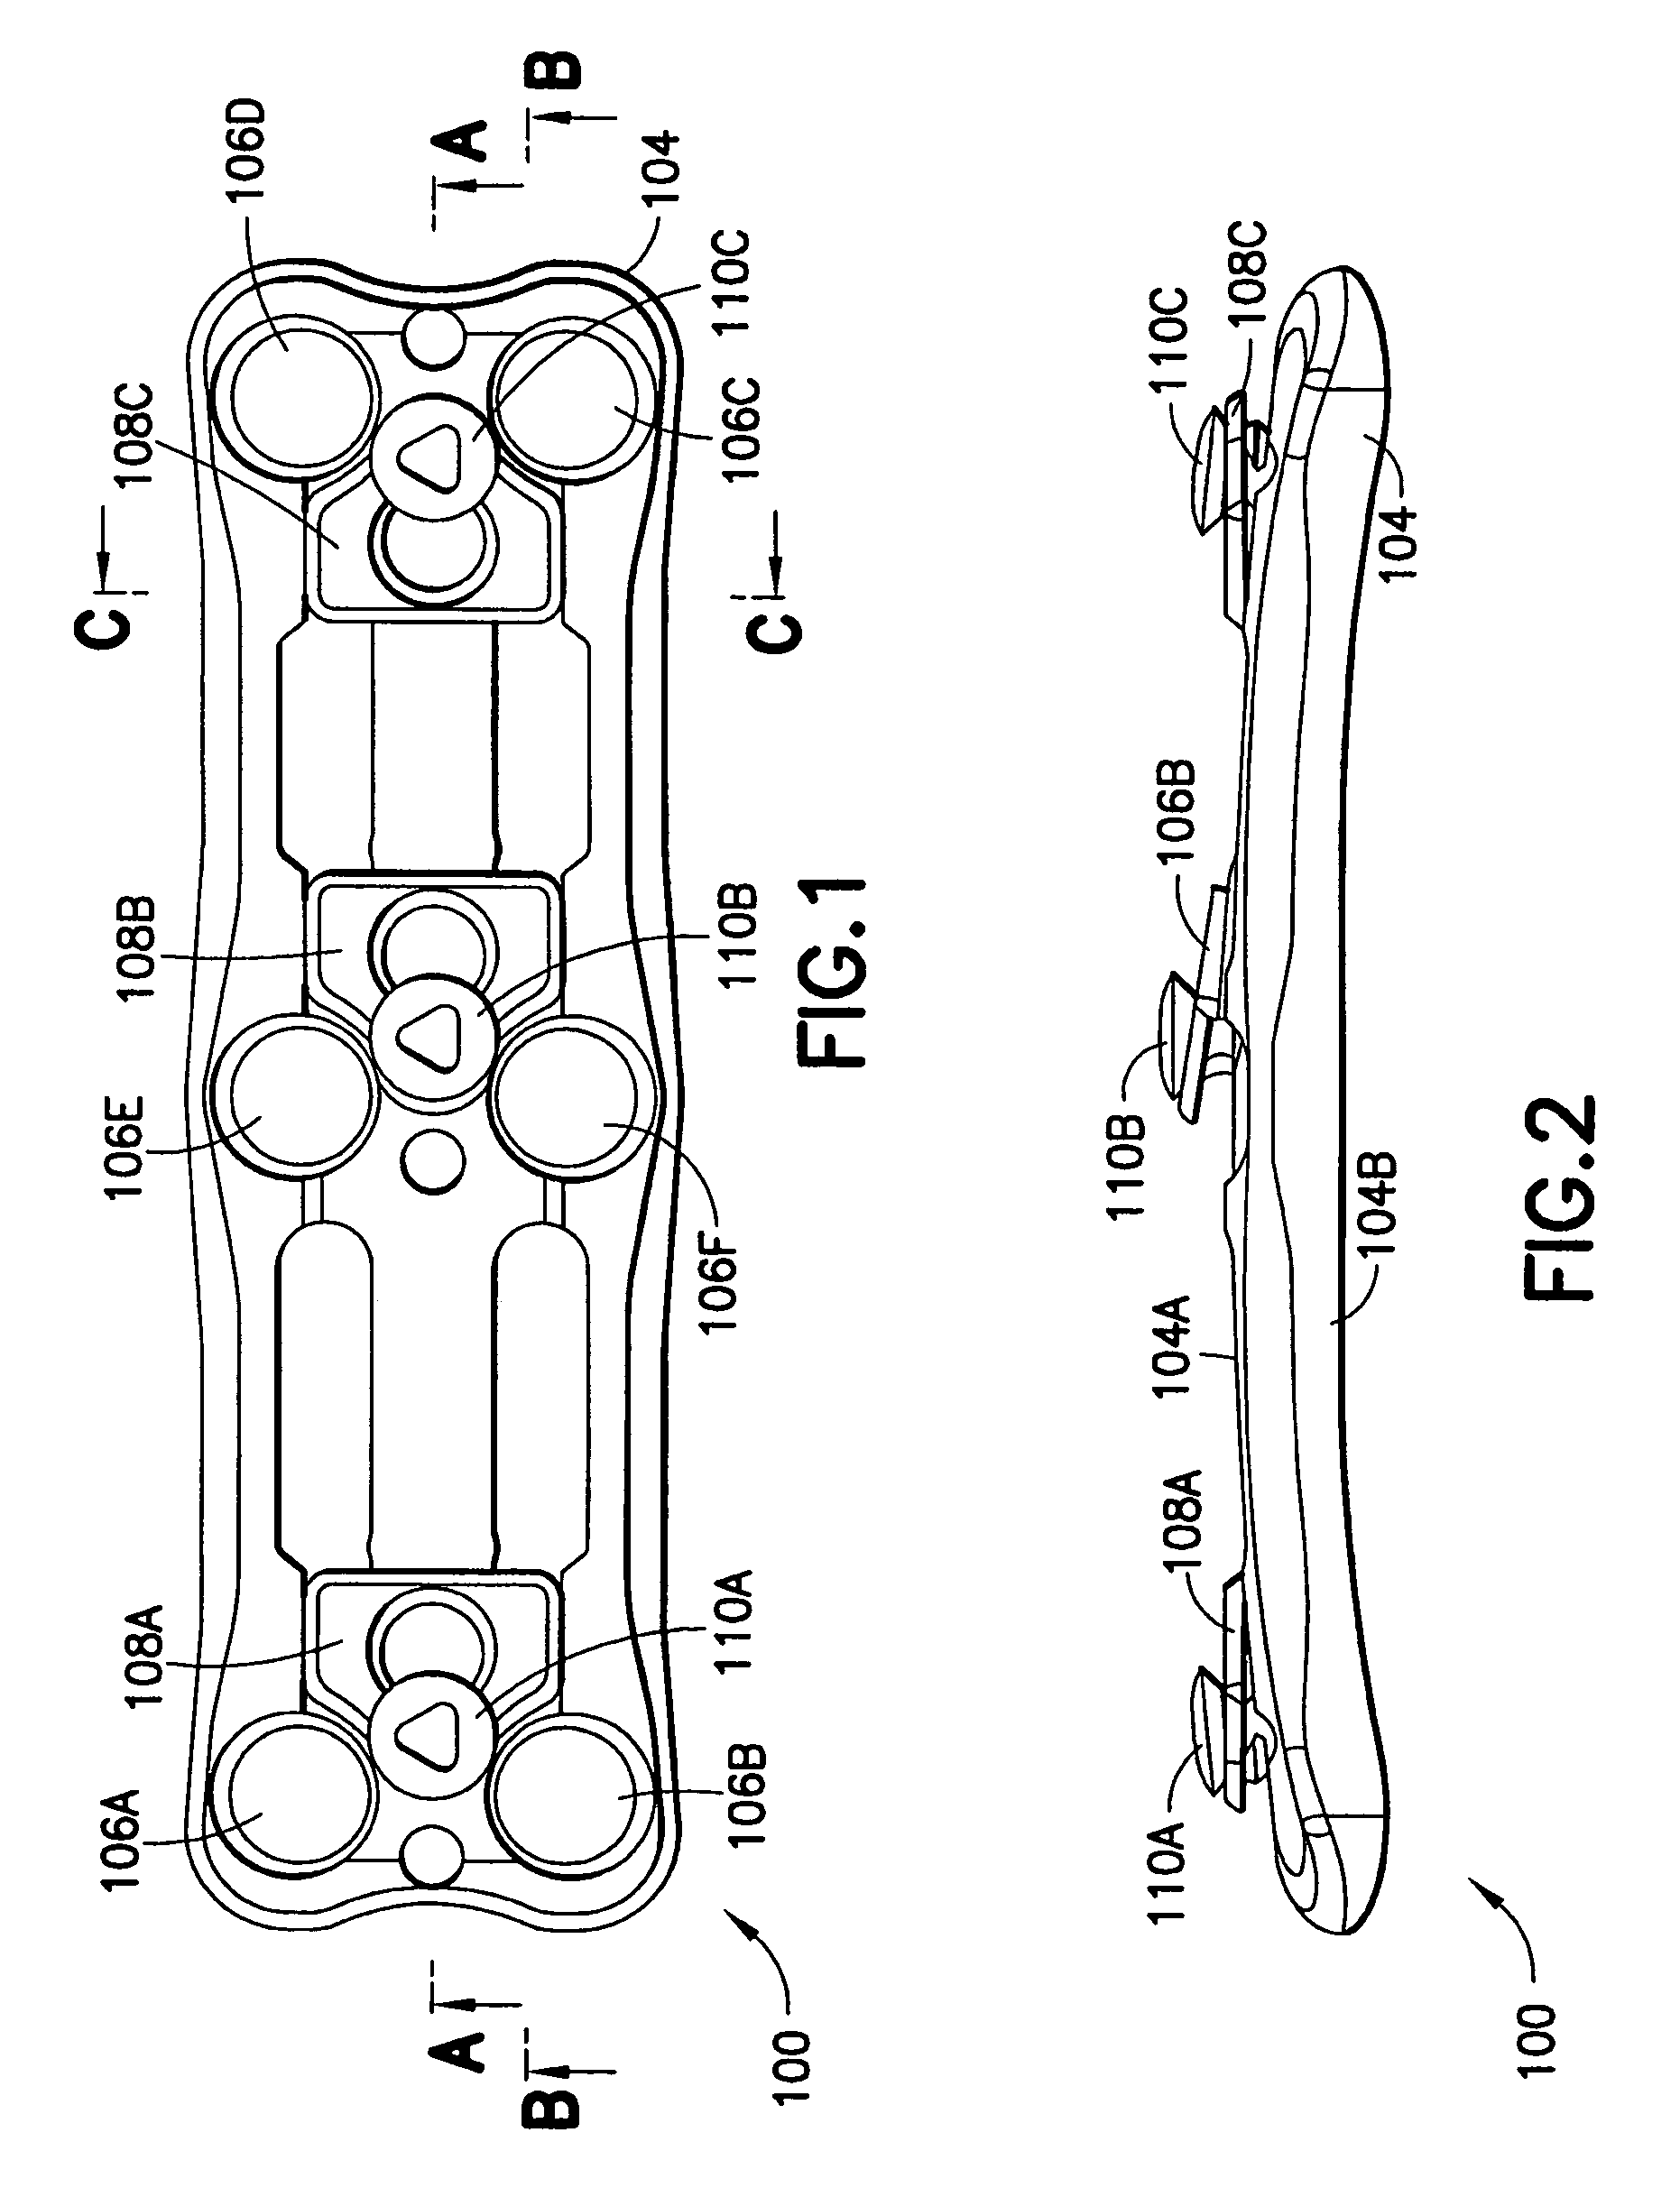 Anterior cervical plating system